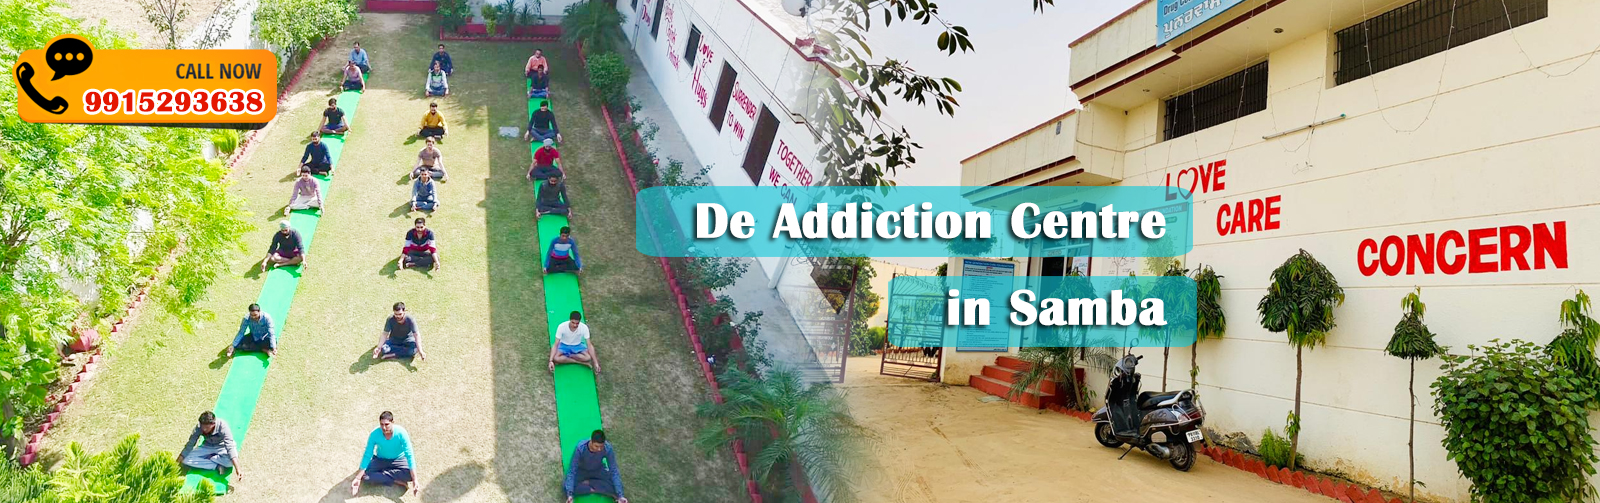 De Addiction Centre in Samba